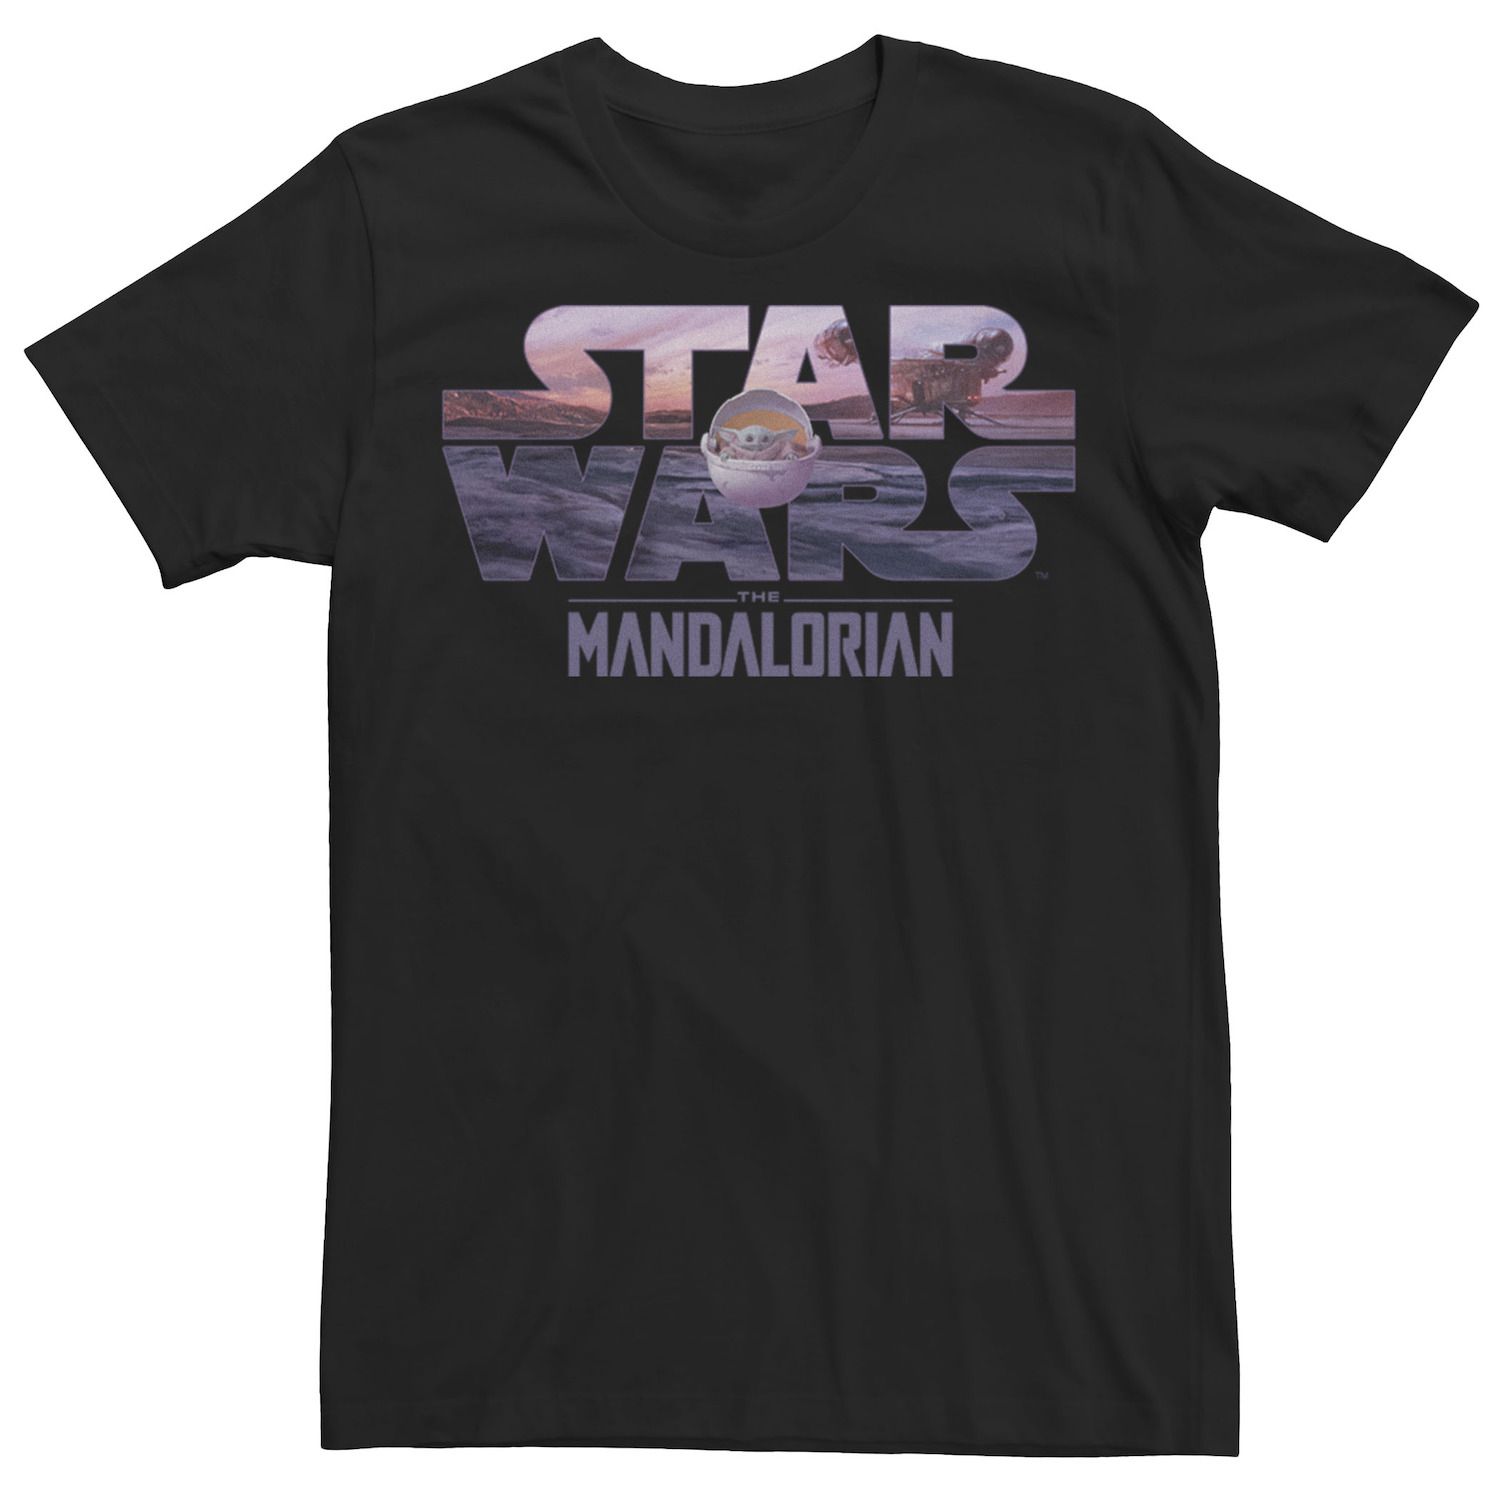 Мужская футболка с логотипом The Mandalorian The Child Star Wars цена и фото